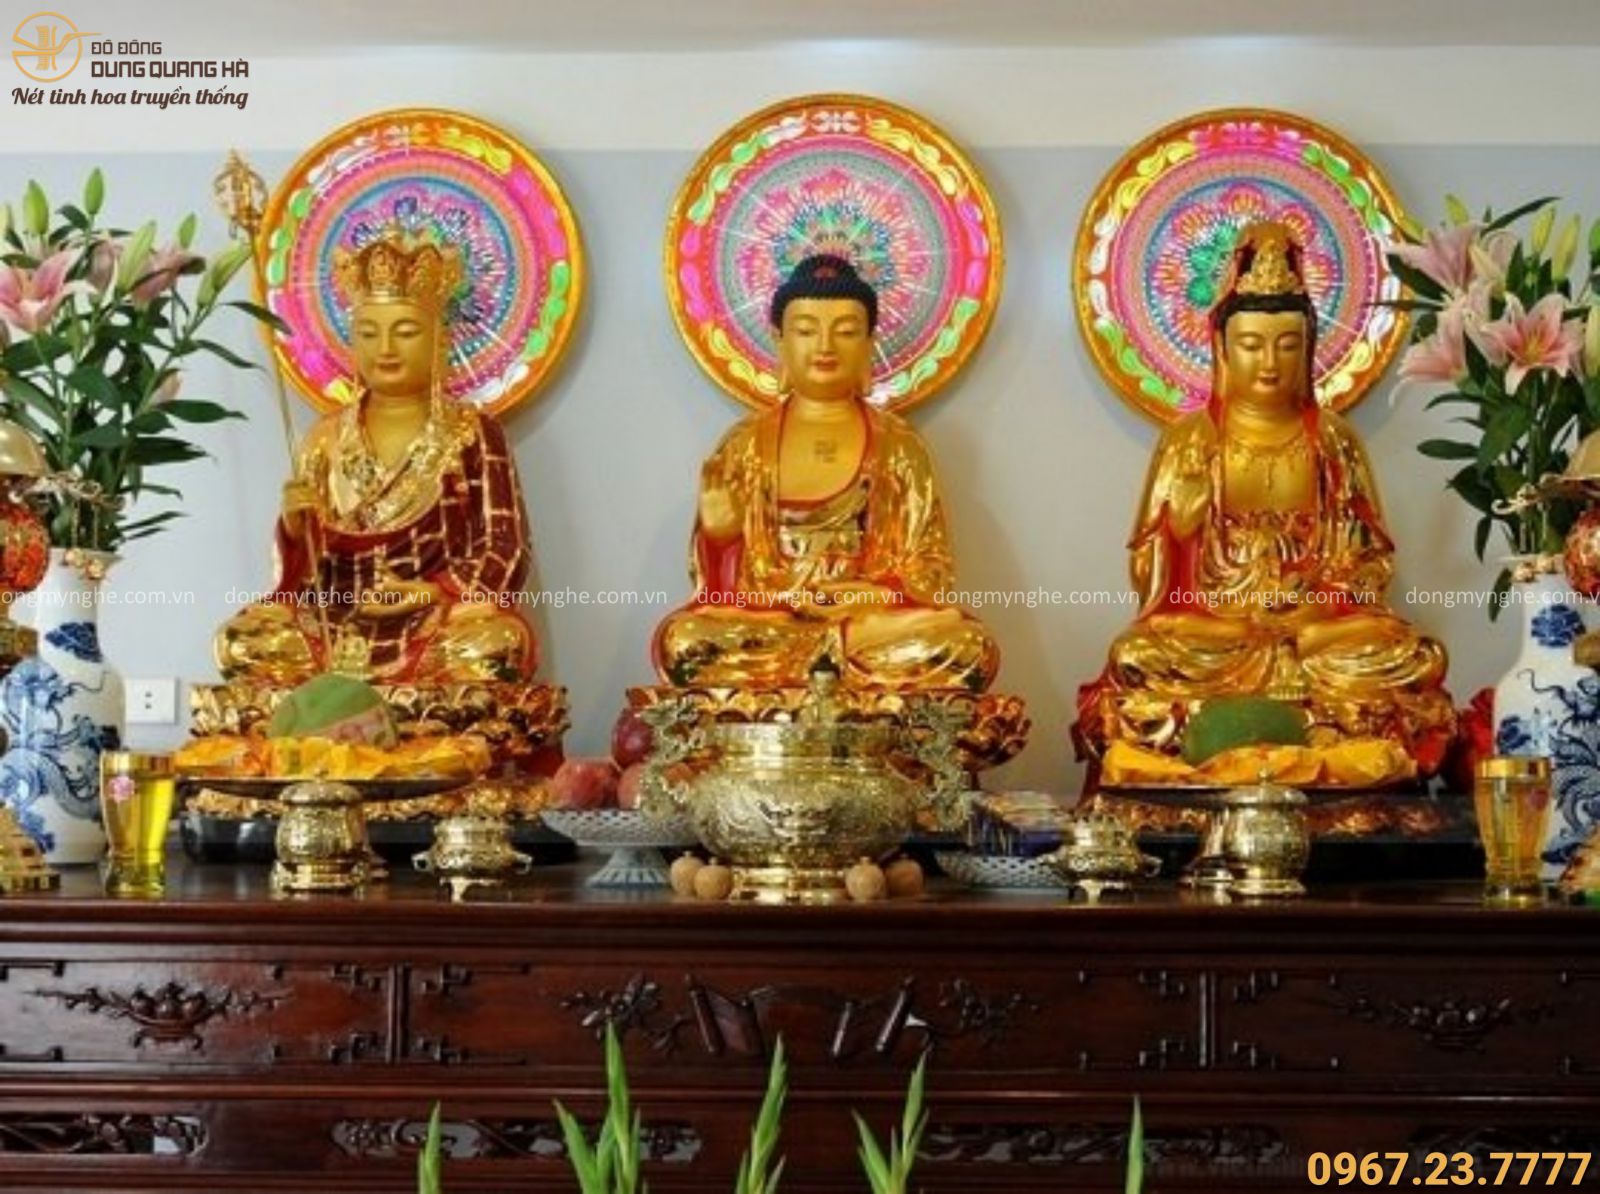 Nếu bạn đang có bàn thờ Phật tại nhà, jđừng bỏ qua việc lưu ý những điều cần nhớ. Hãy tôn trọng những giá trị văn hóa truyền thống của dân tín ngưỡng. Đó là cách tốt nhất để giữ vững tinh thần cầu an, xua tan đi những điều xui xẻo.